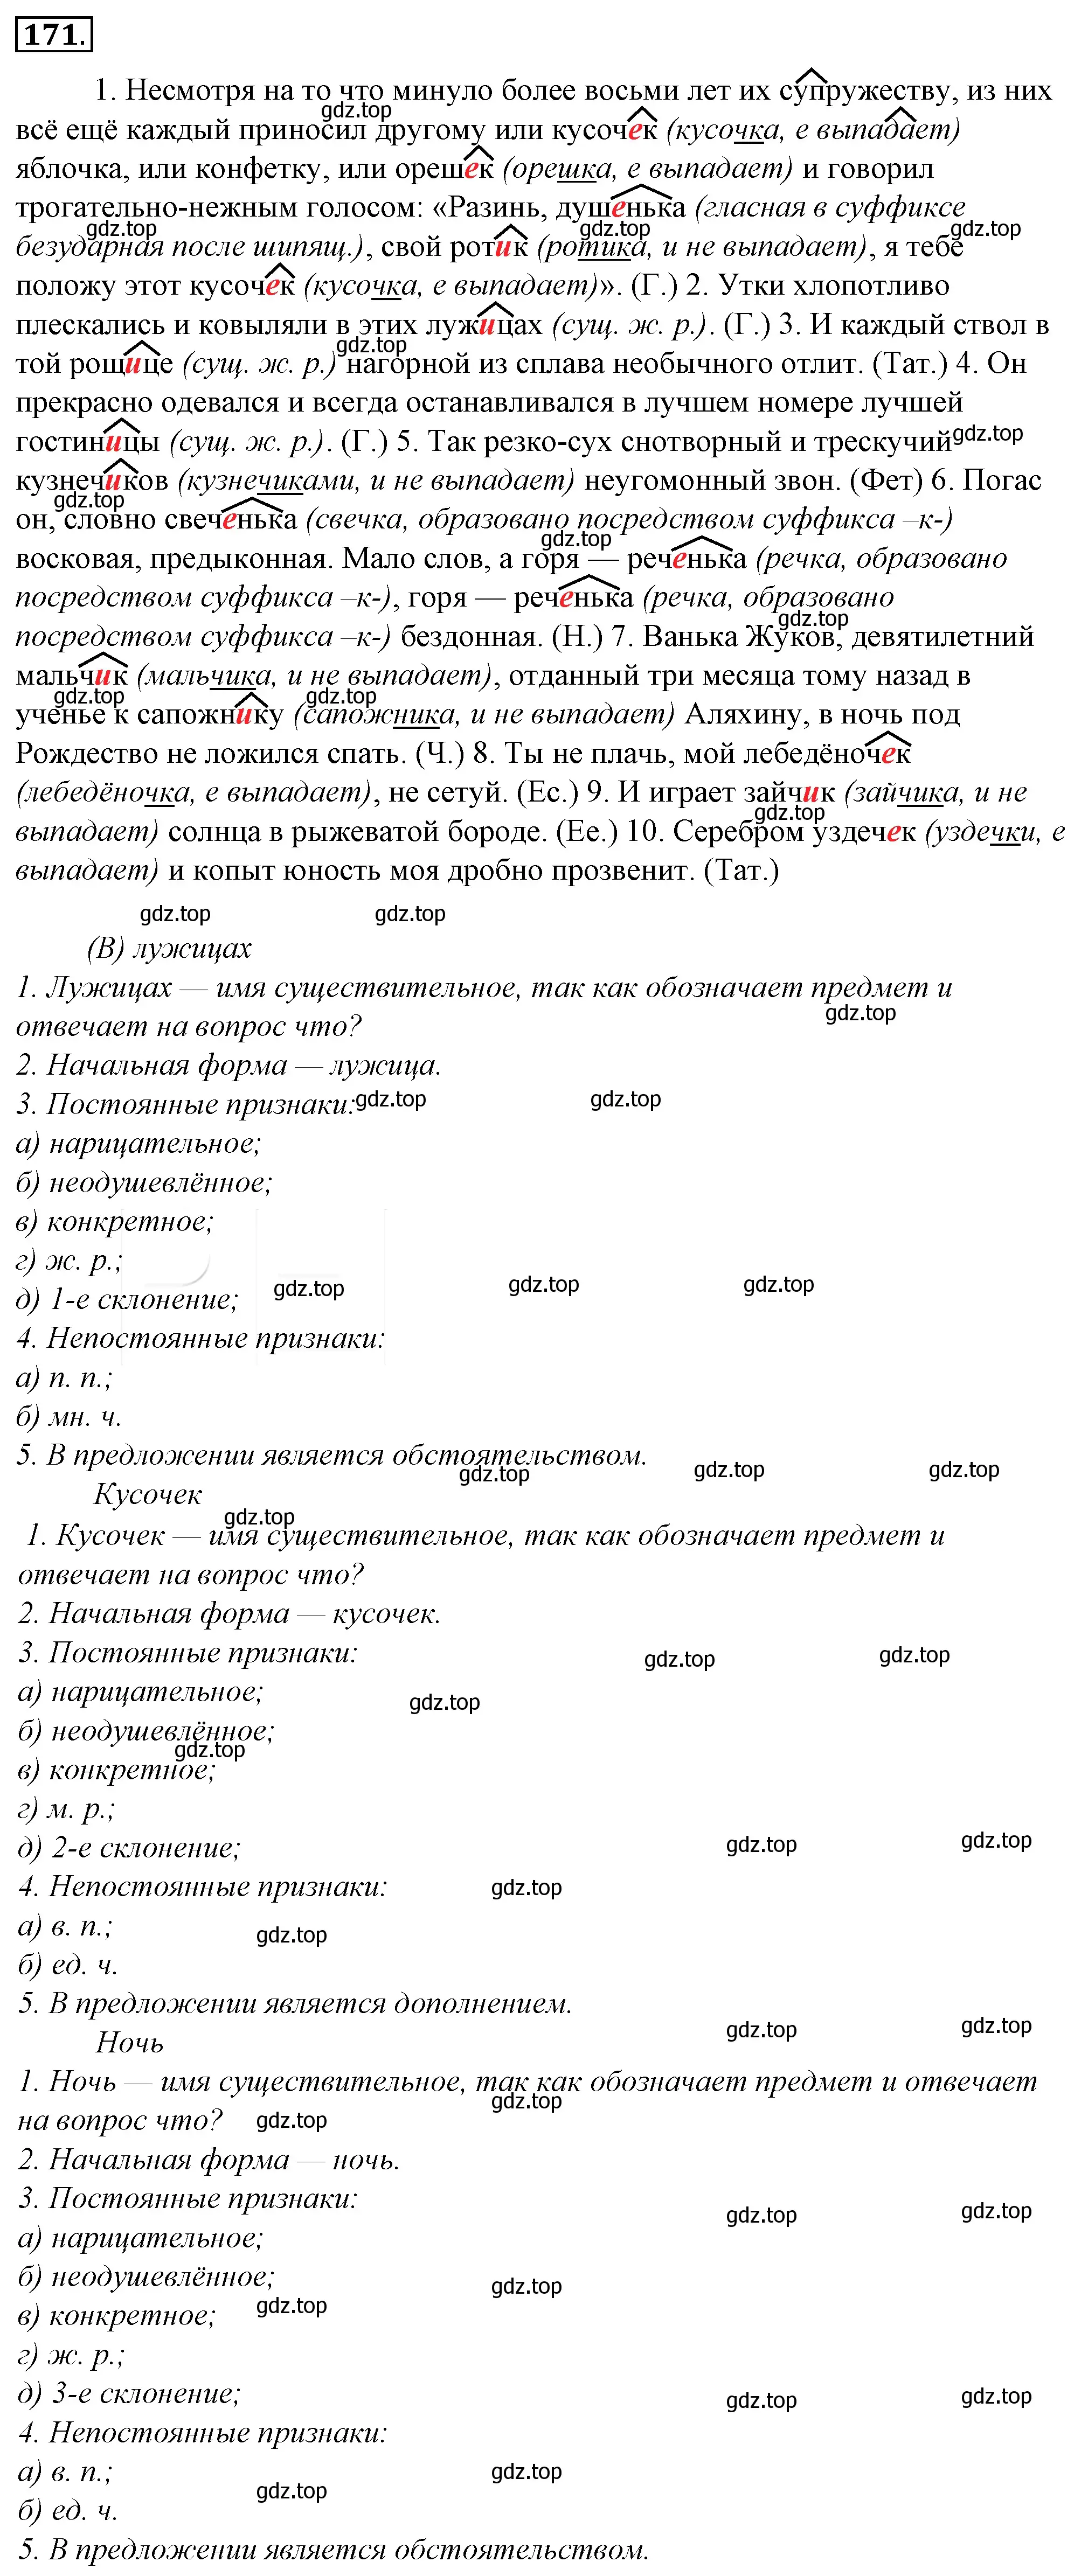 Решение 4. номер 195 (страница 183) гдз по русскому языку 10-11 класс Гольцова, Шамшин, учебник 1 часть